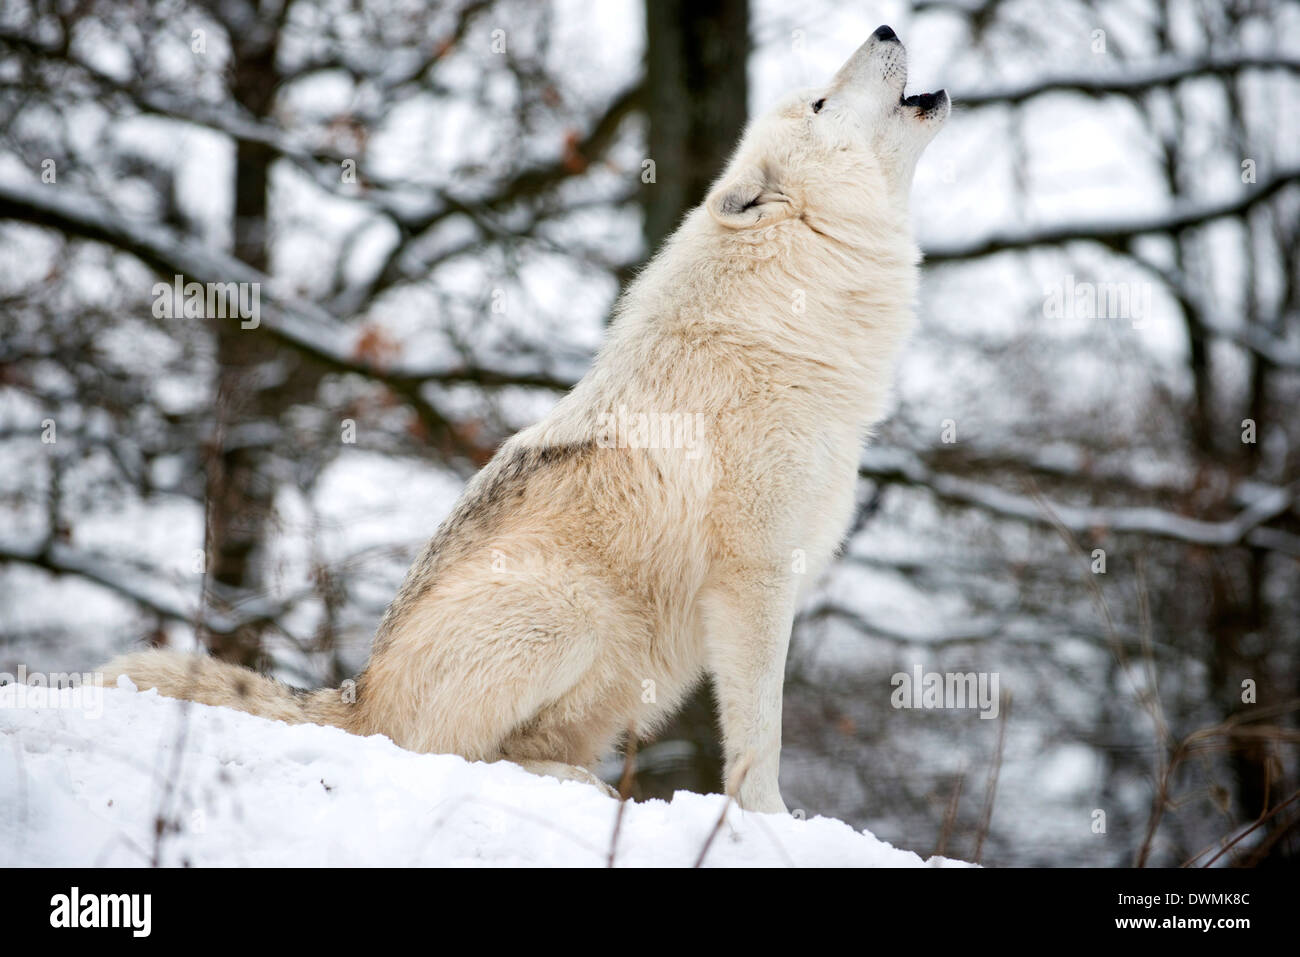 Nordamerikanischen Timber Wolf, Canis Lupus Heulen im Schnee in Laubwald. Stockfoto